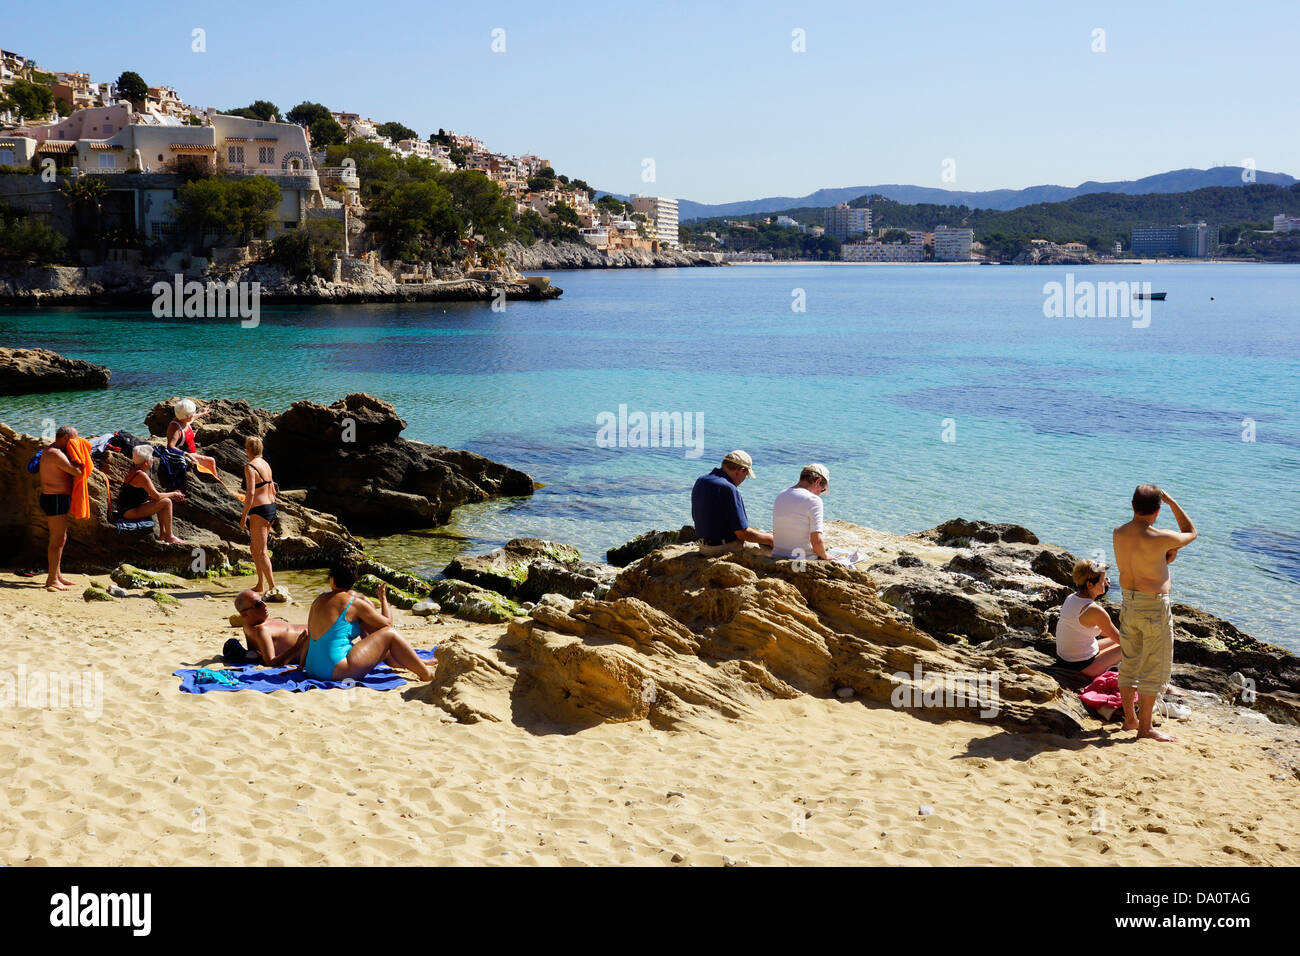 A la playa en la bahía de Santa Ponca, cala fornells, Paguera, Calviá, Mallorca, España Foto de stock